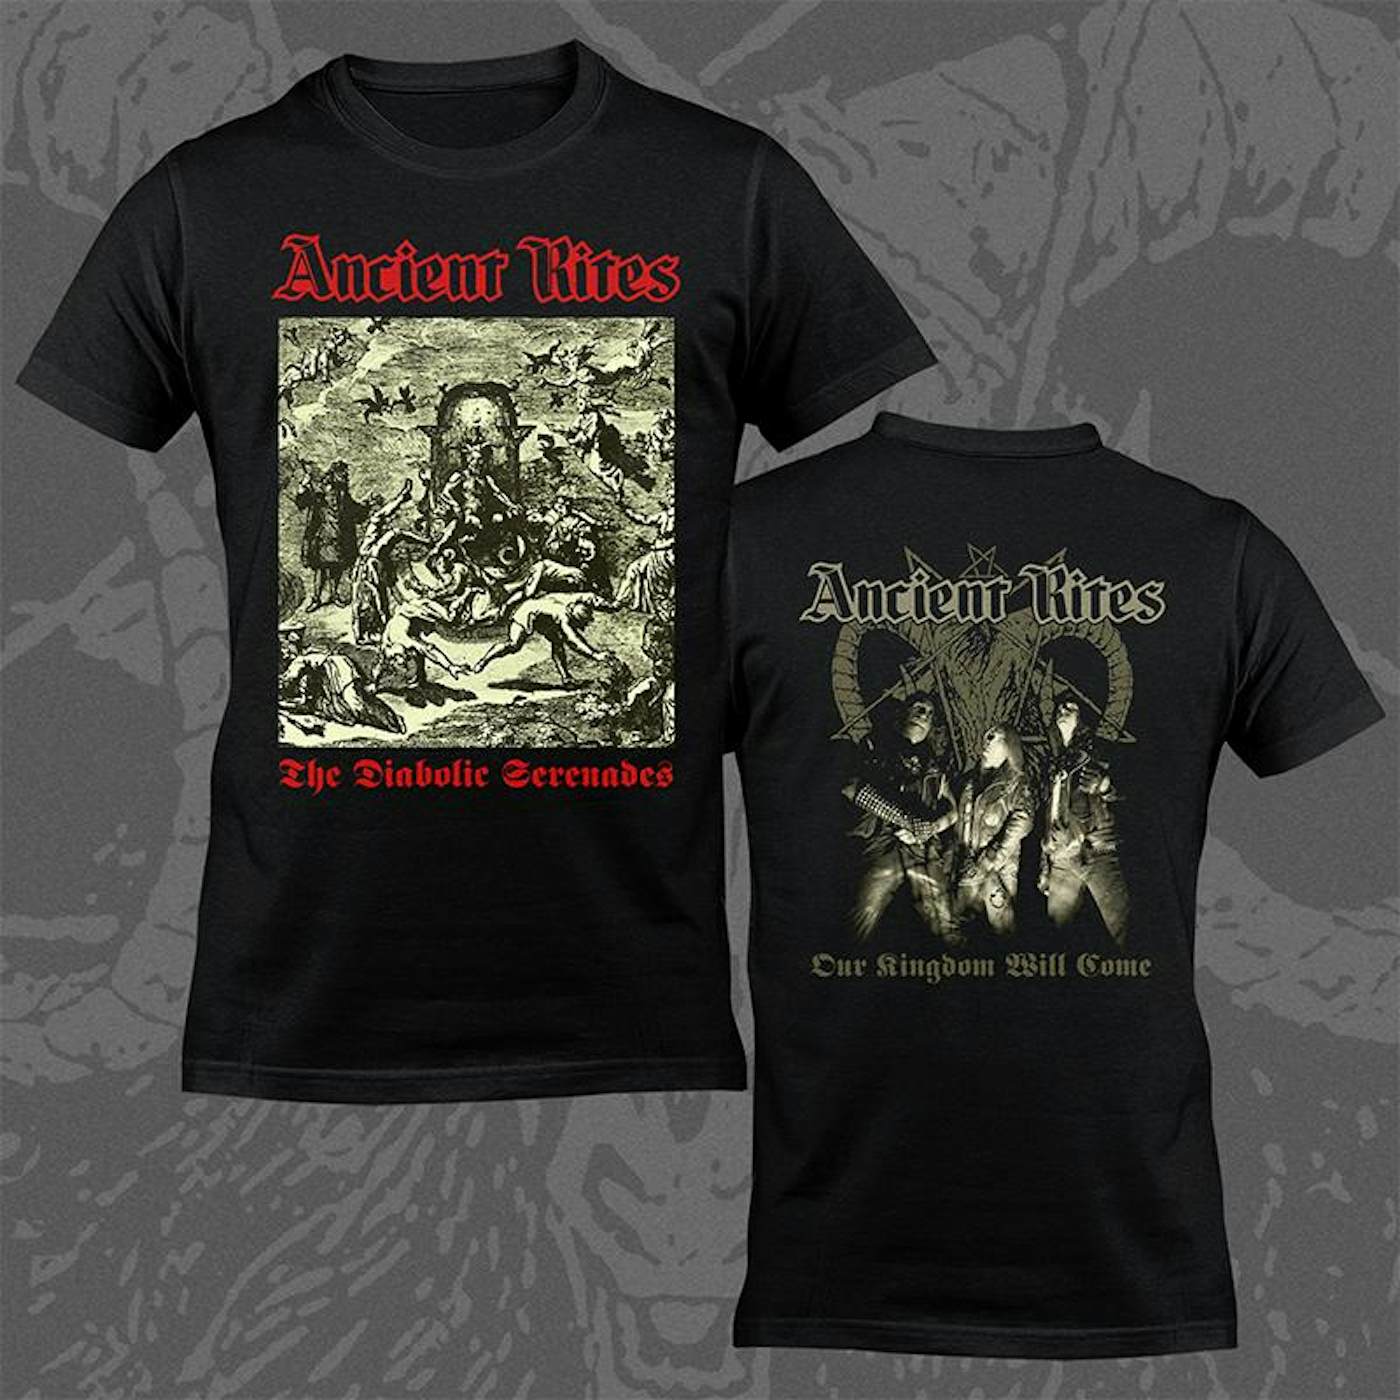 Ancient Rites "The Diabolic Serenades" T-Shirt